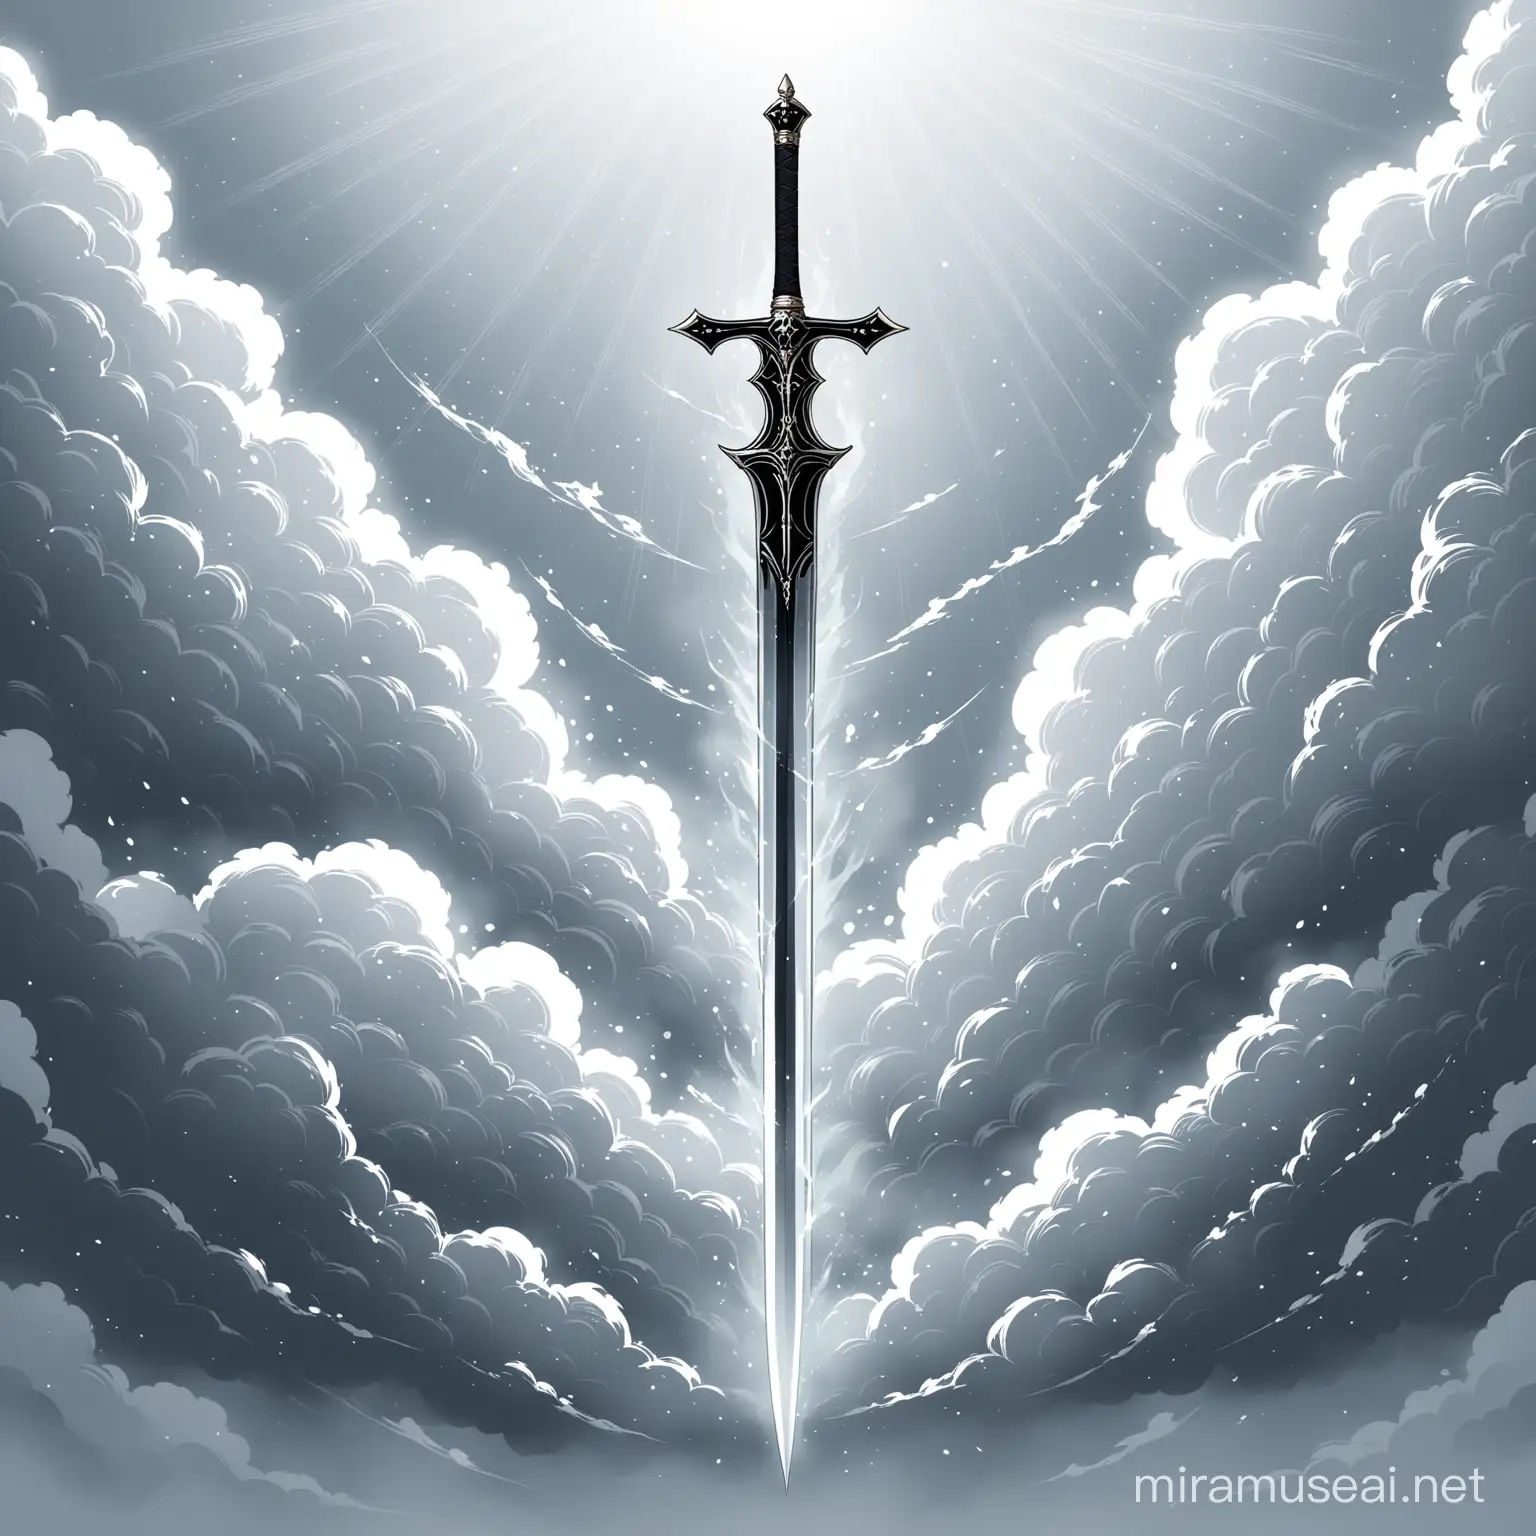 Минимализм. Знамя барона, на котором изображён меч пронизывающий облако серебряного тумана 